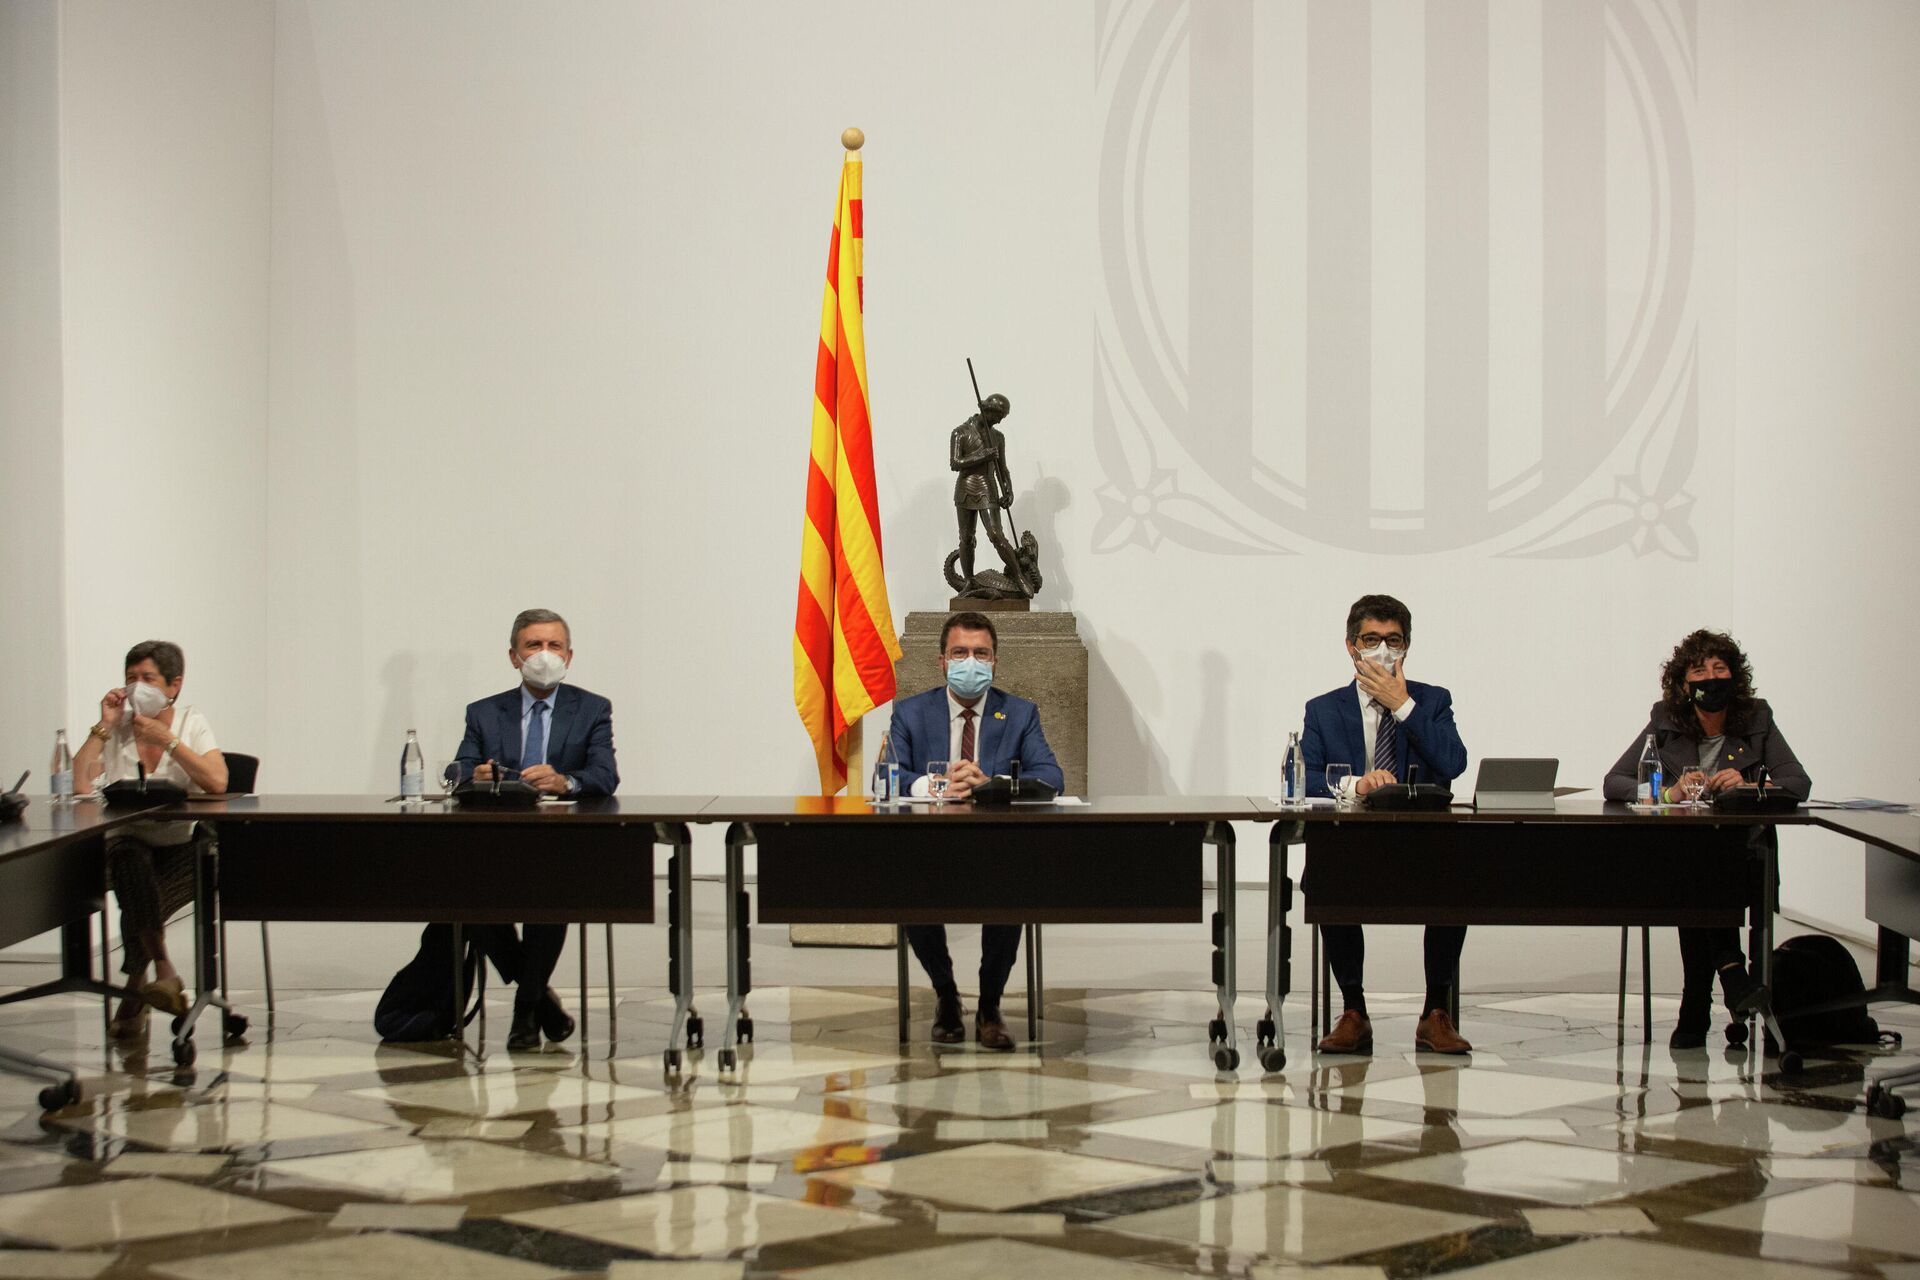 El president de la Generalitat, Pere Aragonès, preside una reunión de la mesa institucional, a 14 de junio de 2021, en Barcelona, Catalunya (España).  - Sputnik Mundo, 1920, 09.08.2021